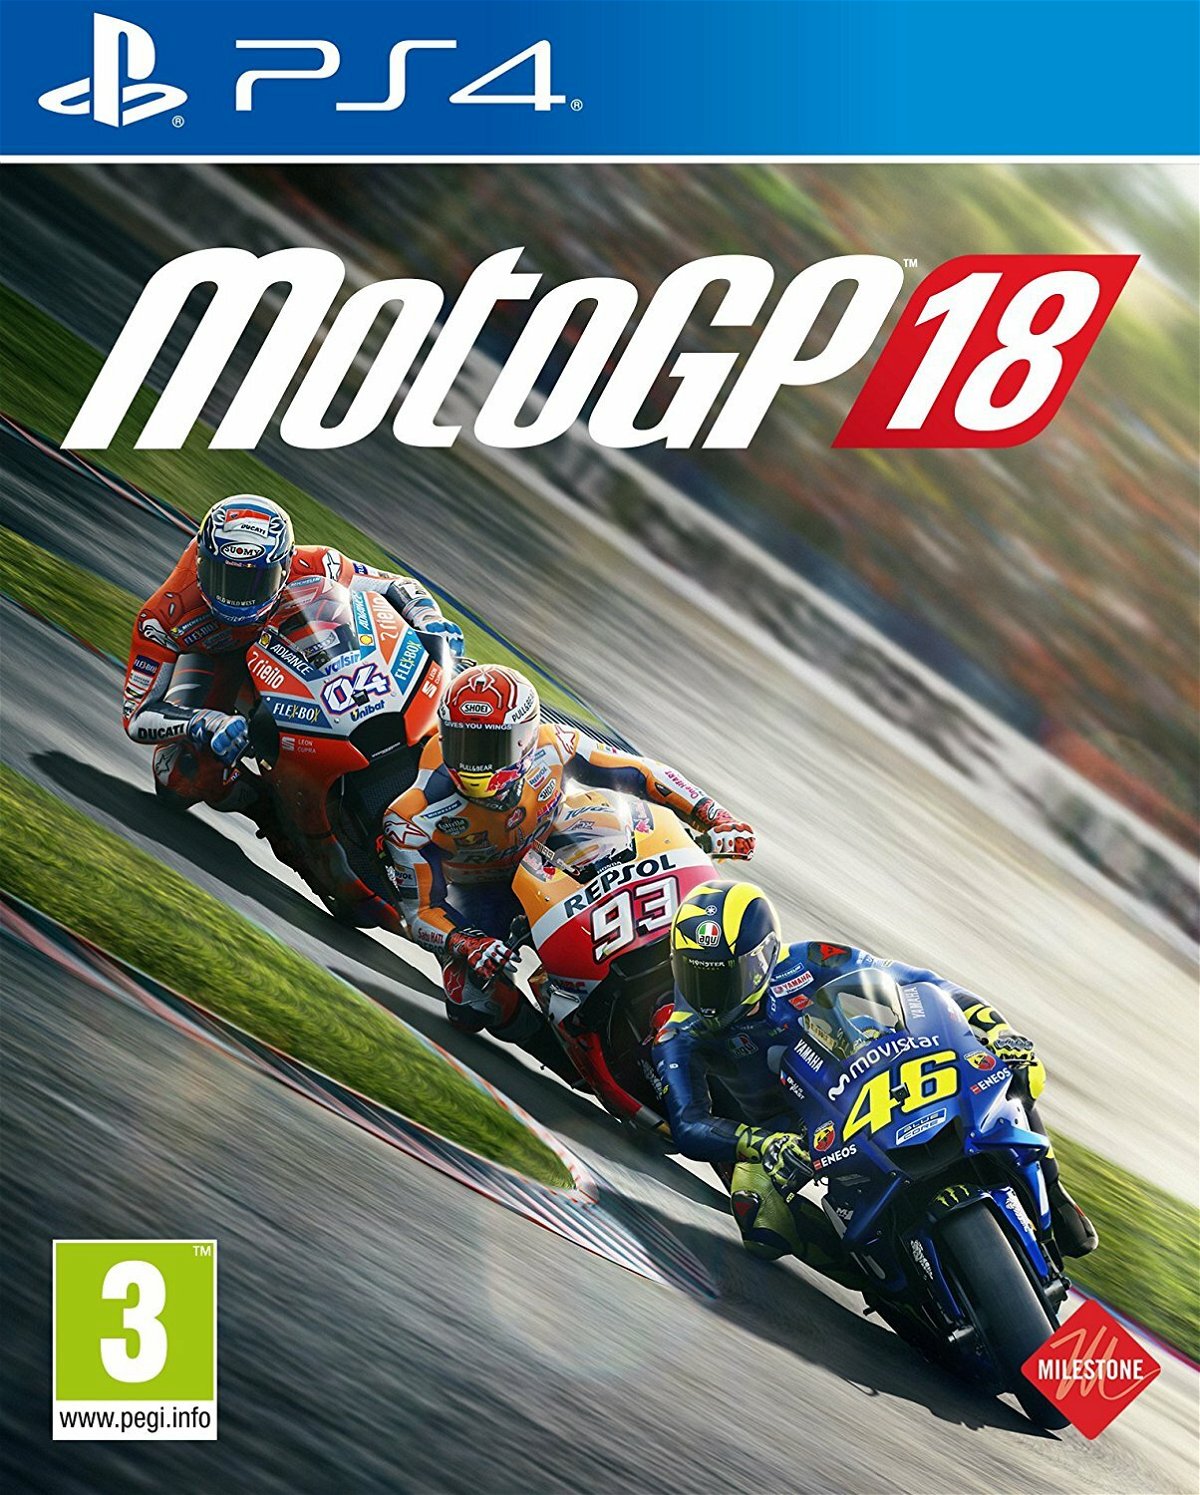 MotoGP 18 in uscita il 7 giugno 2018